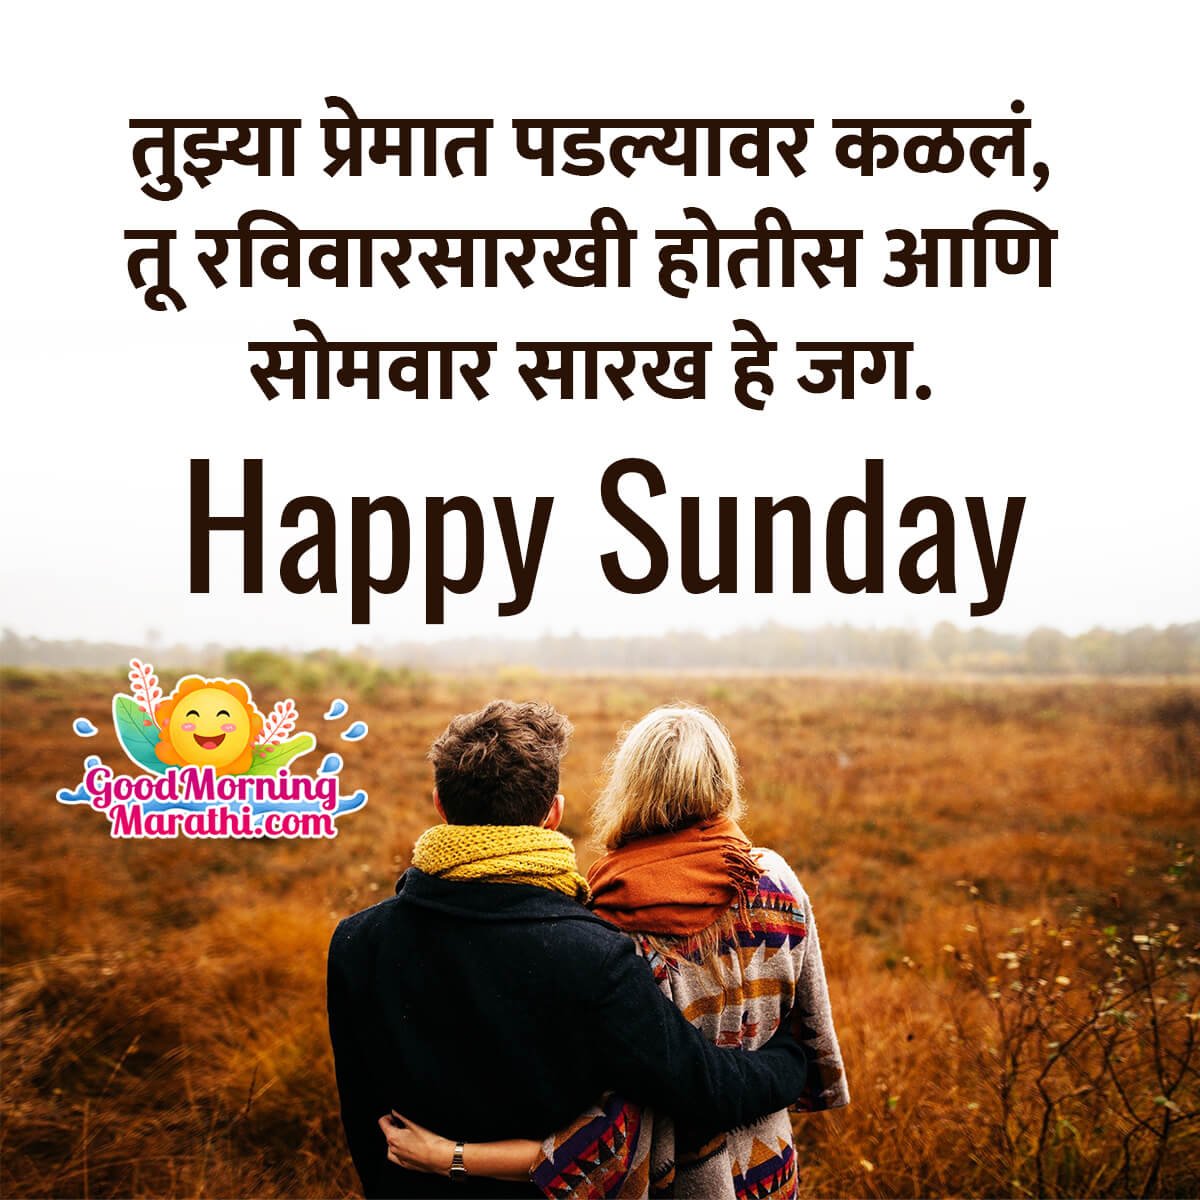 Happy Sunday Shayari Images In Marathi - Good Morning Wishes ...